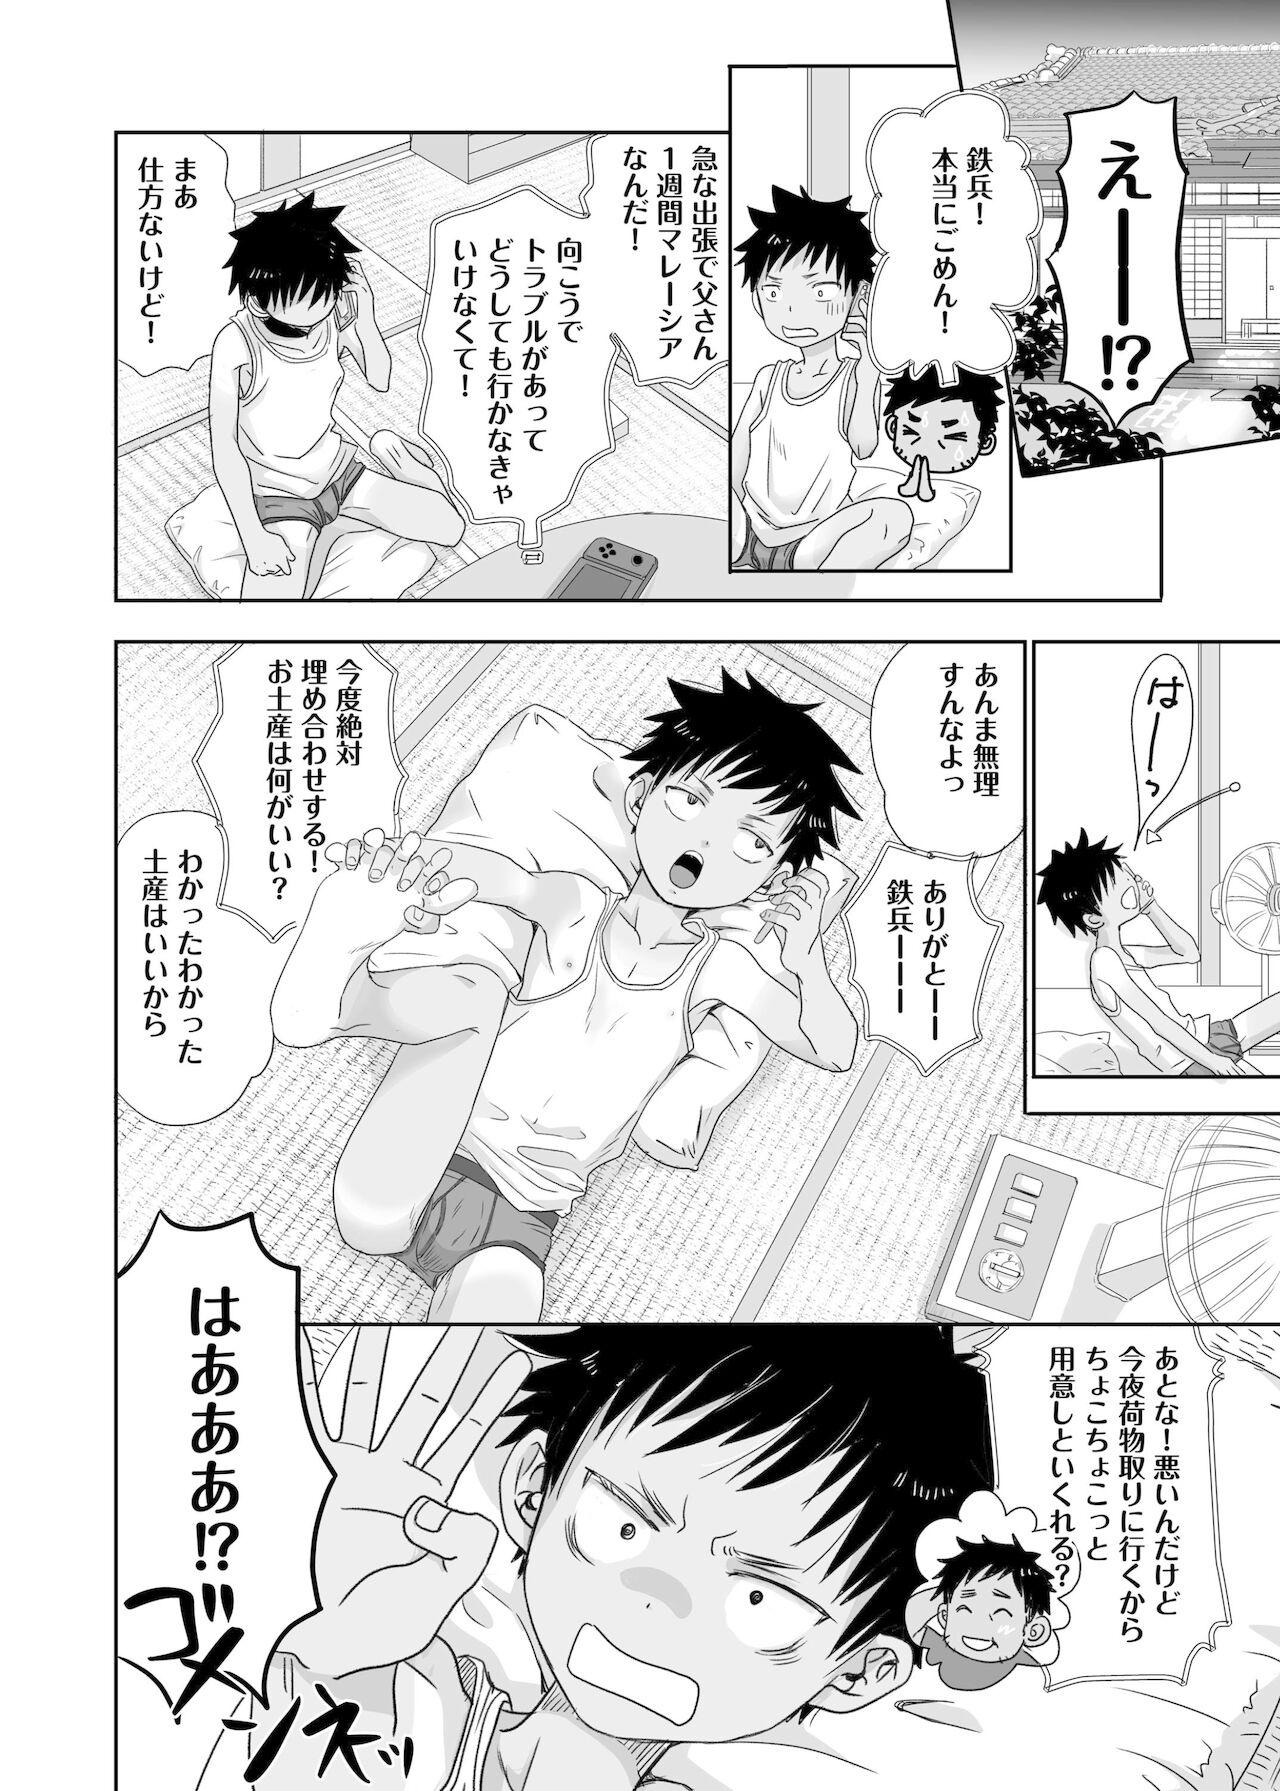 Girlsfucking Tonari no oniisan no Karada ga sugokute ki ni naru. Sis - Page 6